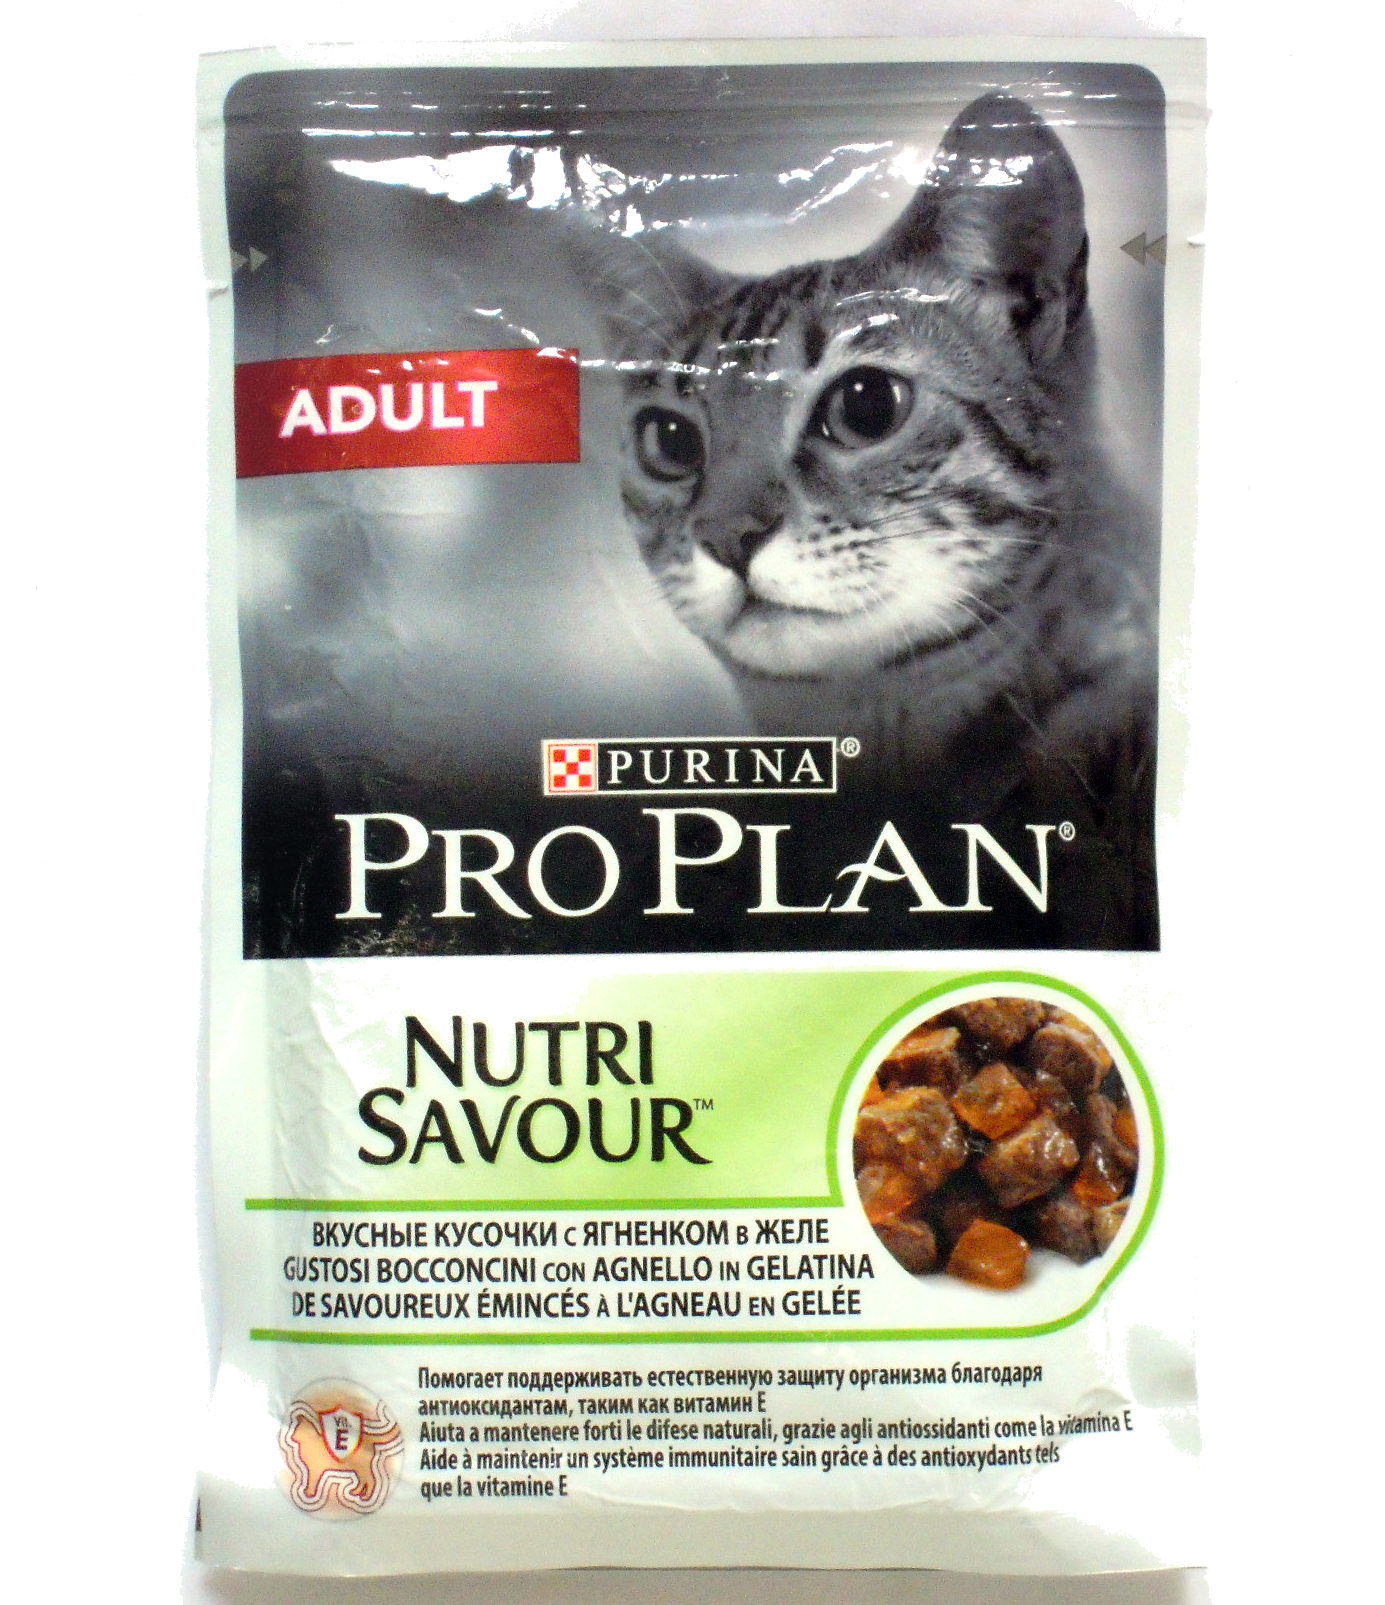 Purina Pro Plan Nutri Savour вкусные кусочки с ягненком в желе - Product - ru